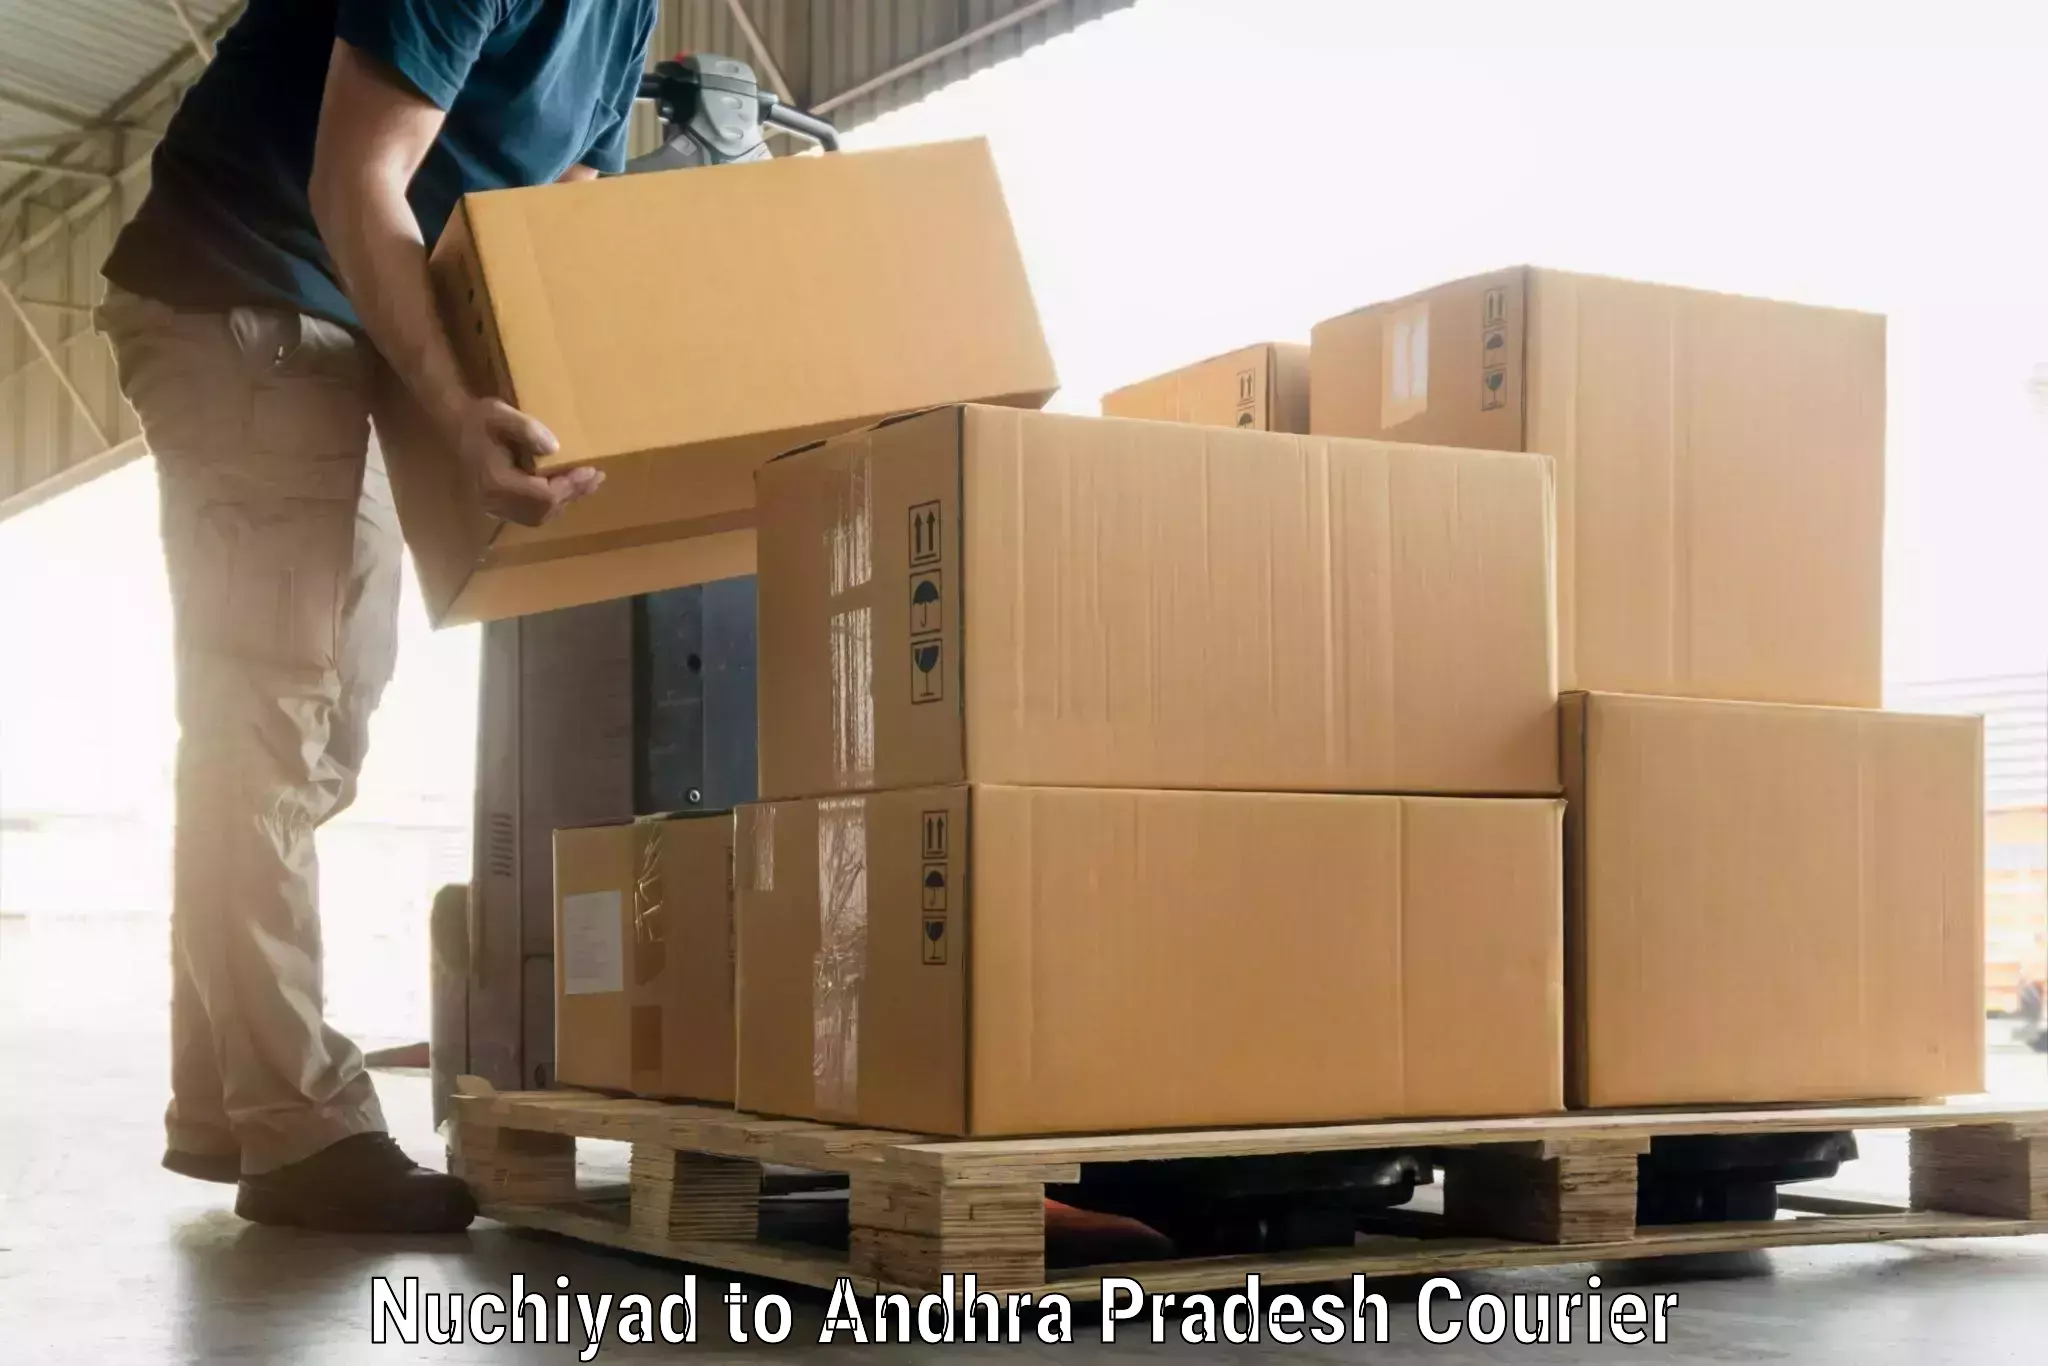 Luggage shipping strategy Nuchiyad to Visakhapatnam